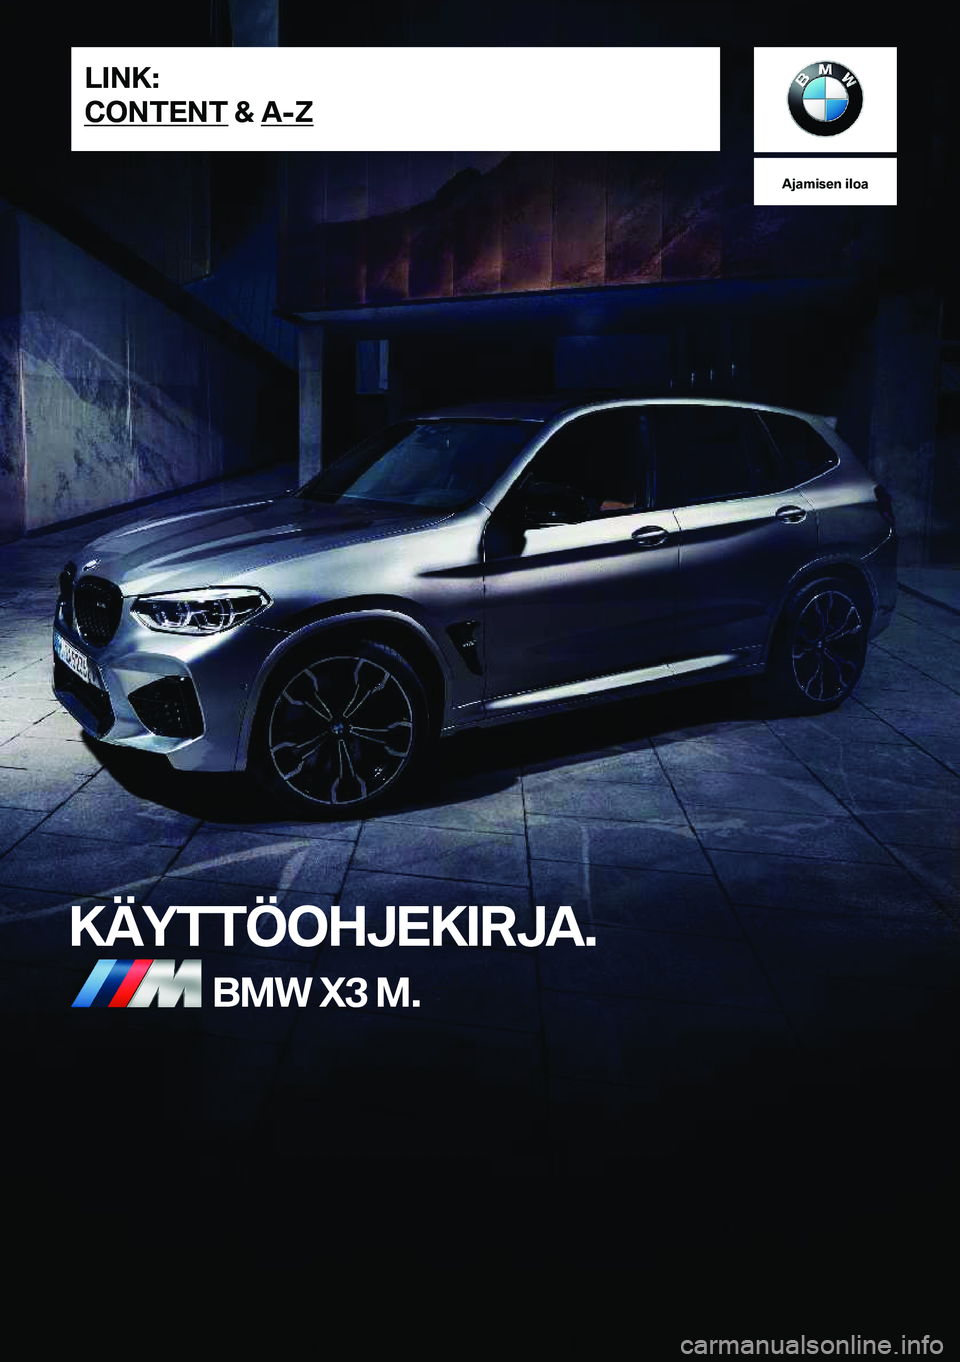 BMW X3 M 2021  Omistajan Käsikirja (in Finnish) �A�j�a�m�i�s�e�n��i�l�o�a
�K�